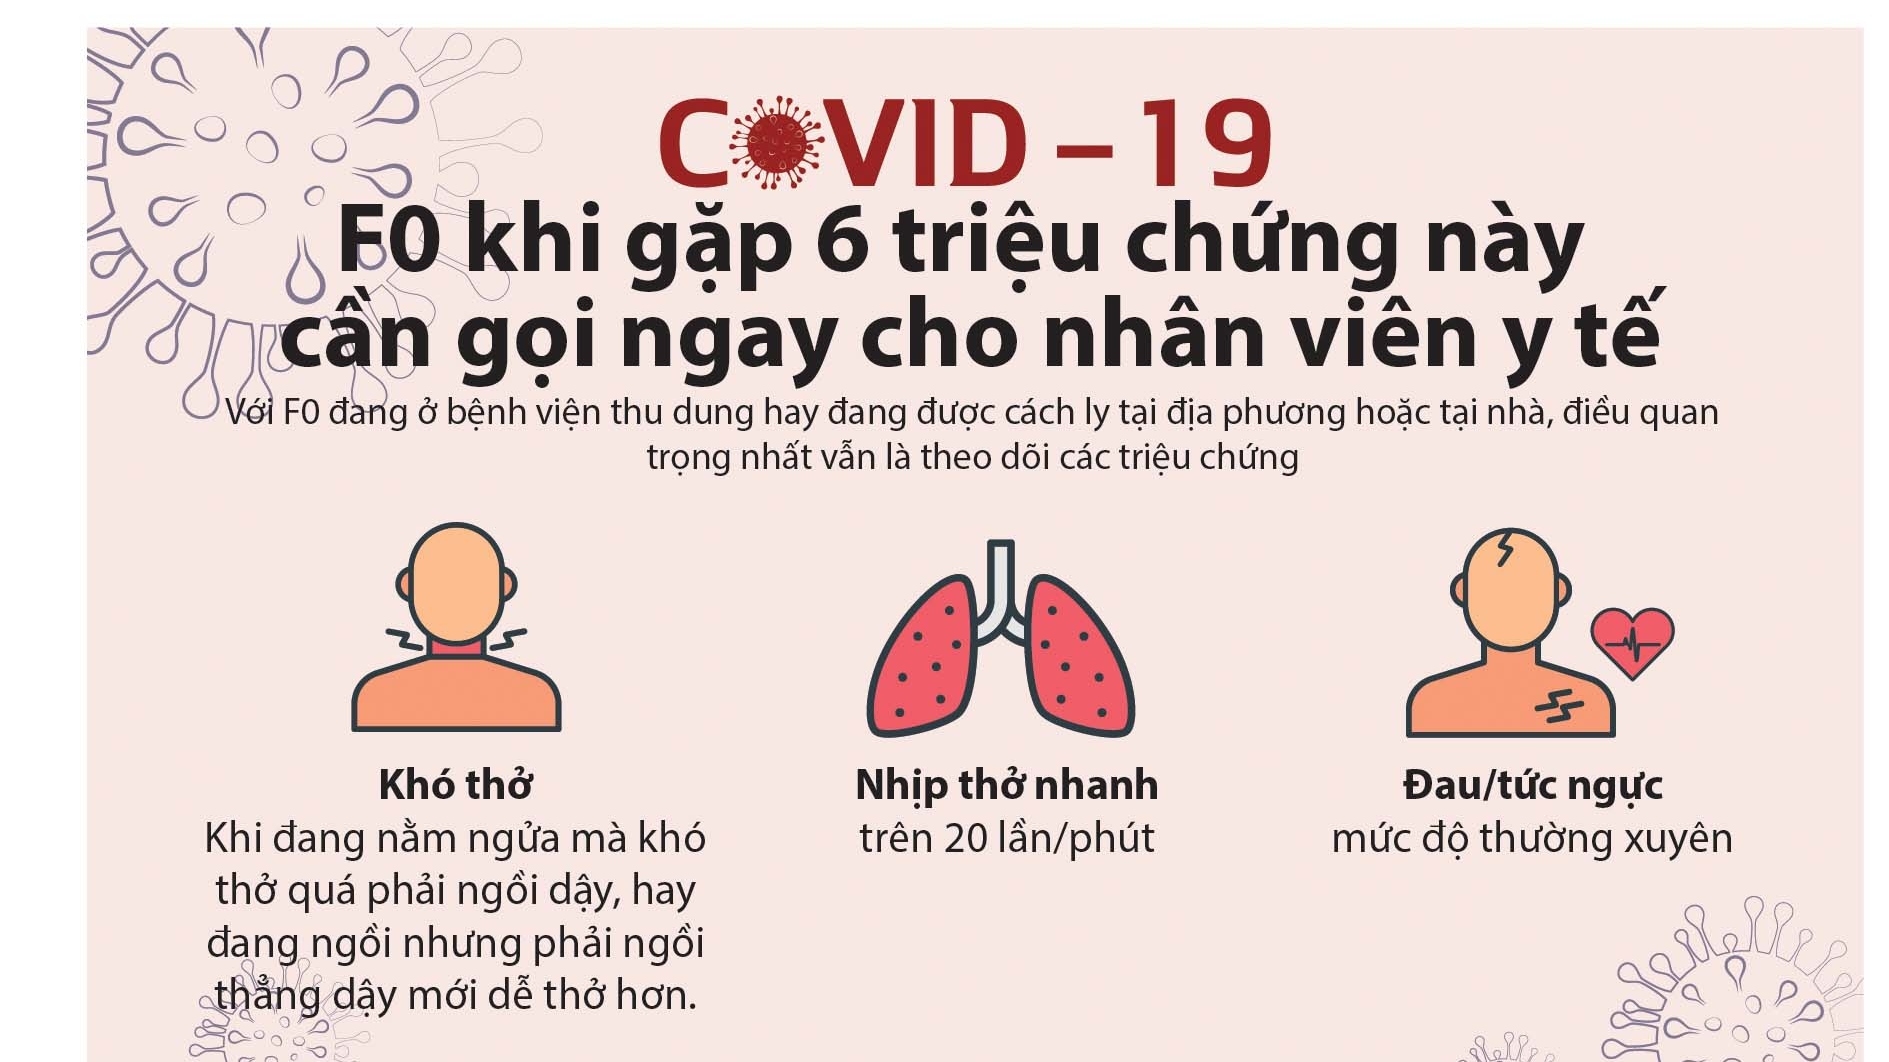 Dịch Covid-19: F0 khi gặp 6 triệu chứng này cần gọi ngay cho nhân viên y tế